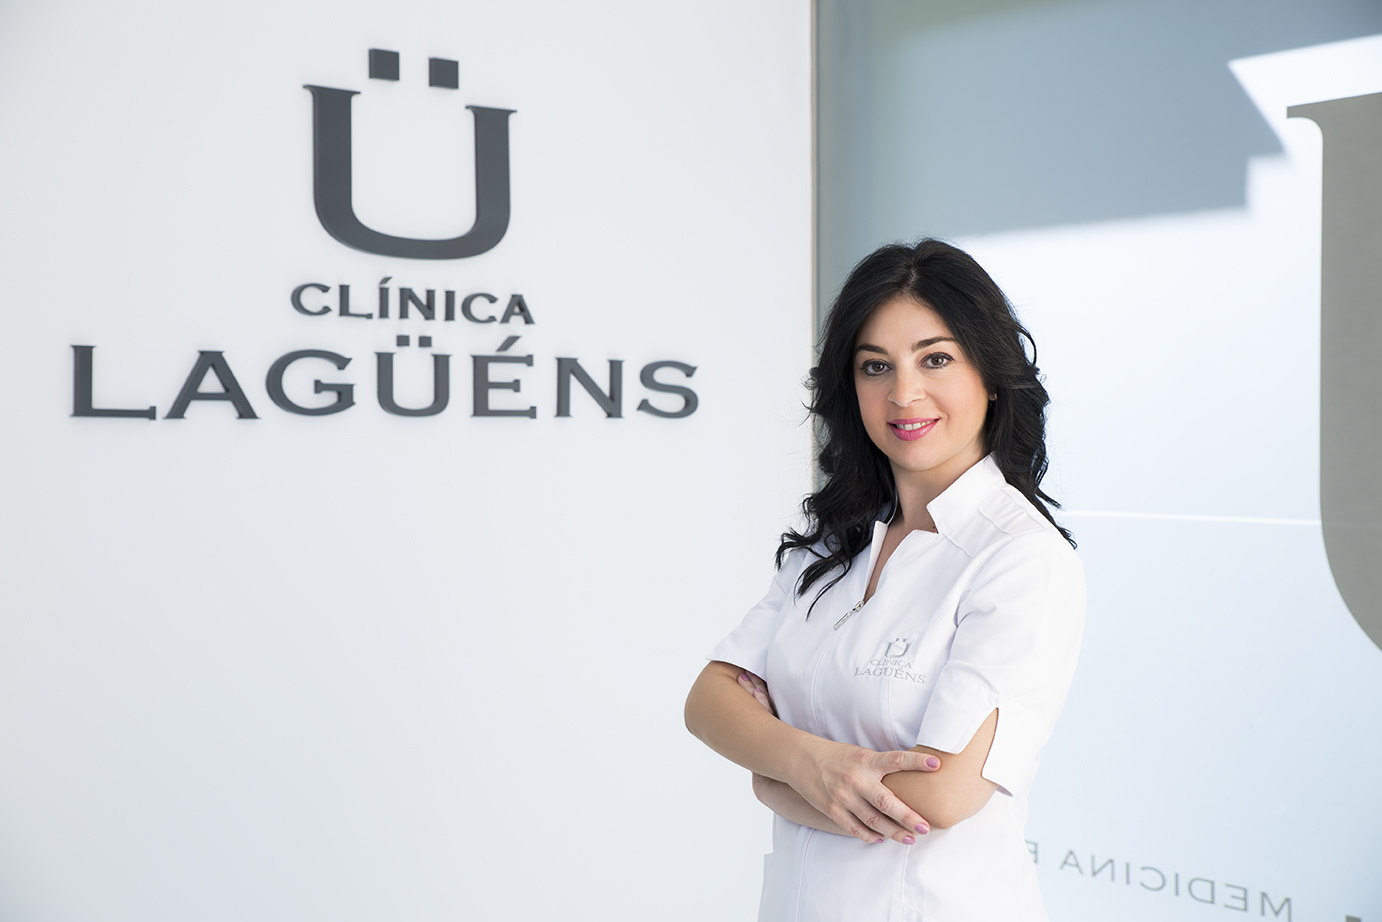 Equipo médico clínica Dra Soledad Lagüéns